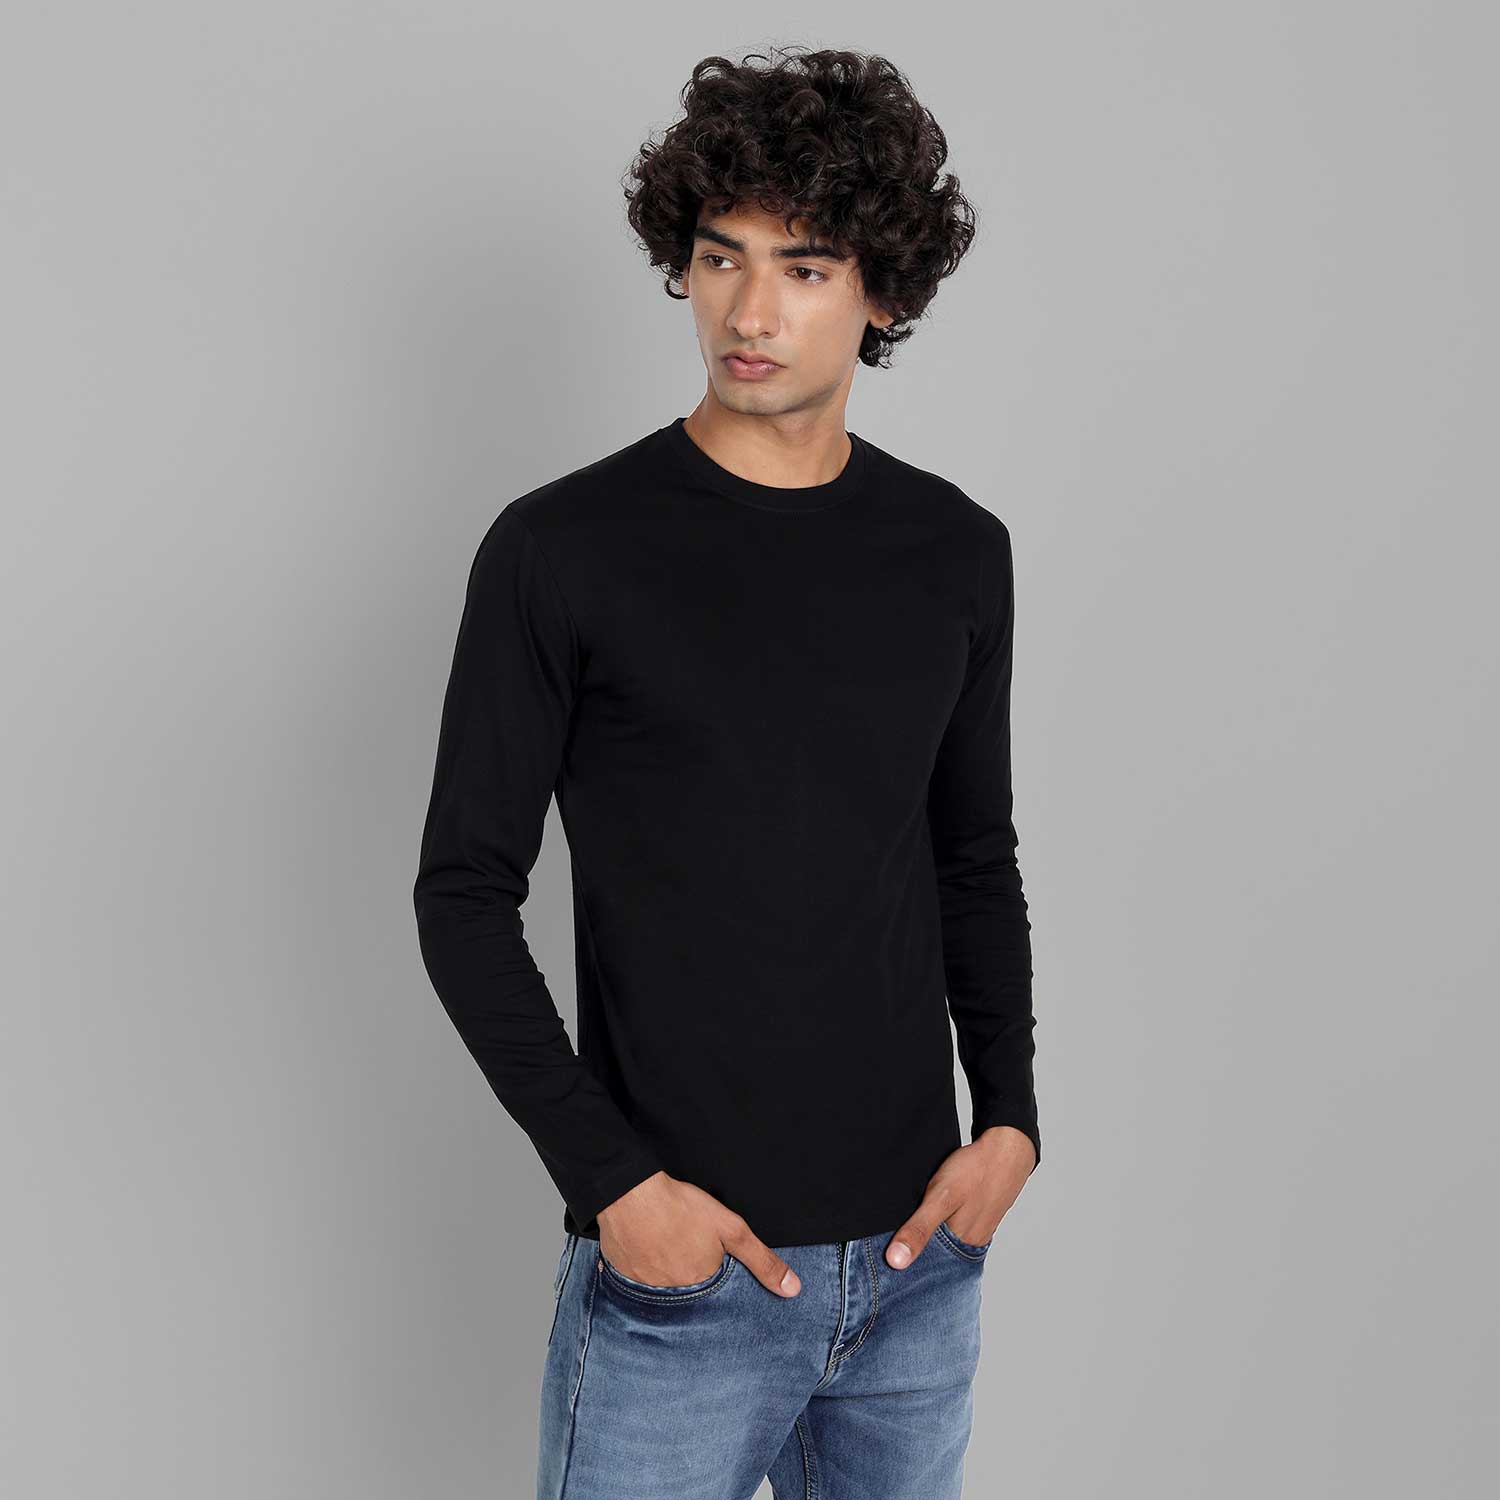 Plain Half Sleeve White And Full Sleeve Black T-shirt Combo For men